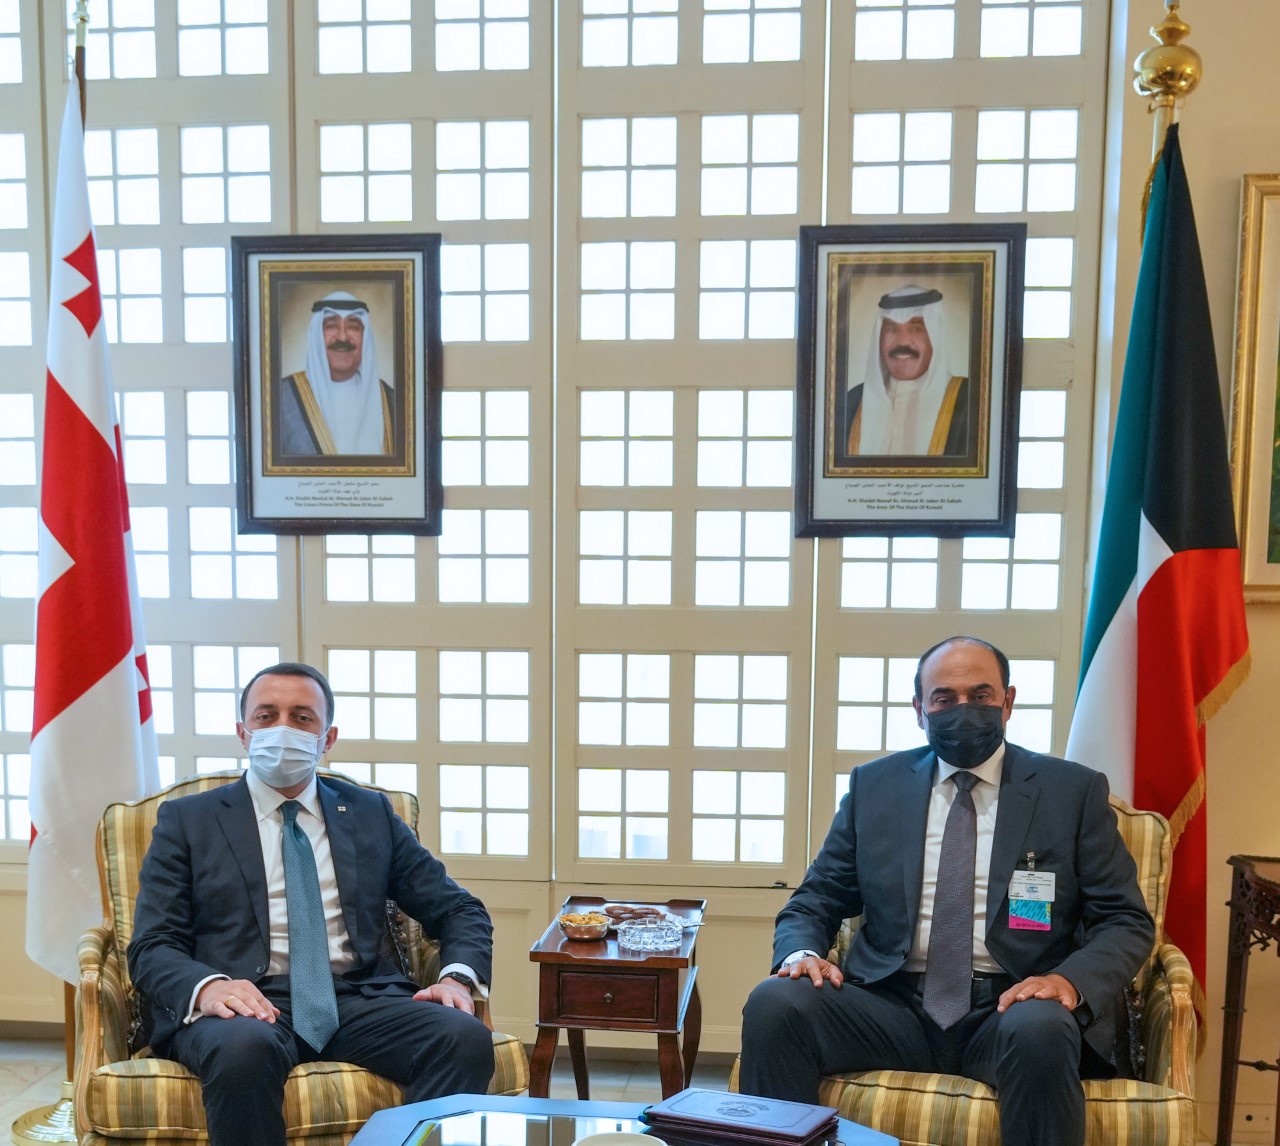 ممثل حضرة صاحب السمو أمير البلاد سمو رئيس مجلس الوزراء يلتقي رئيس وزراء جورجيا